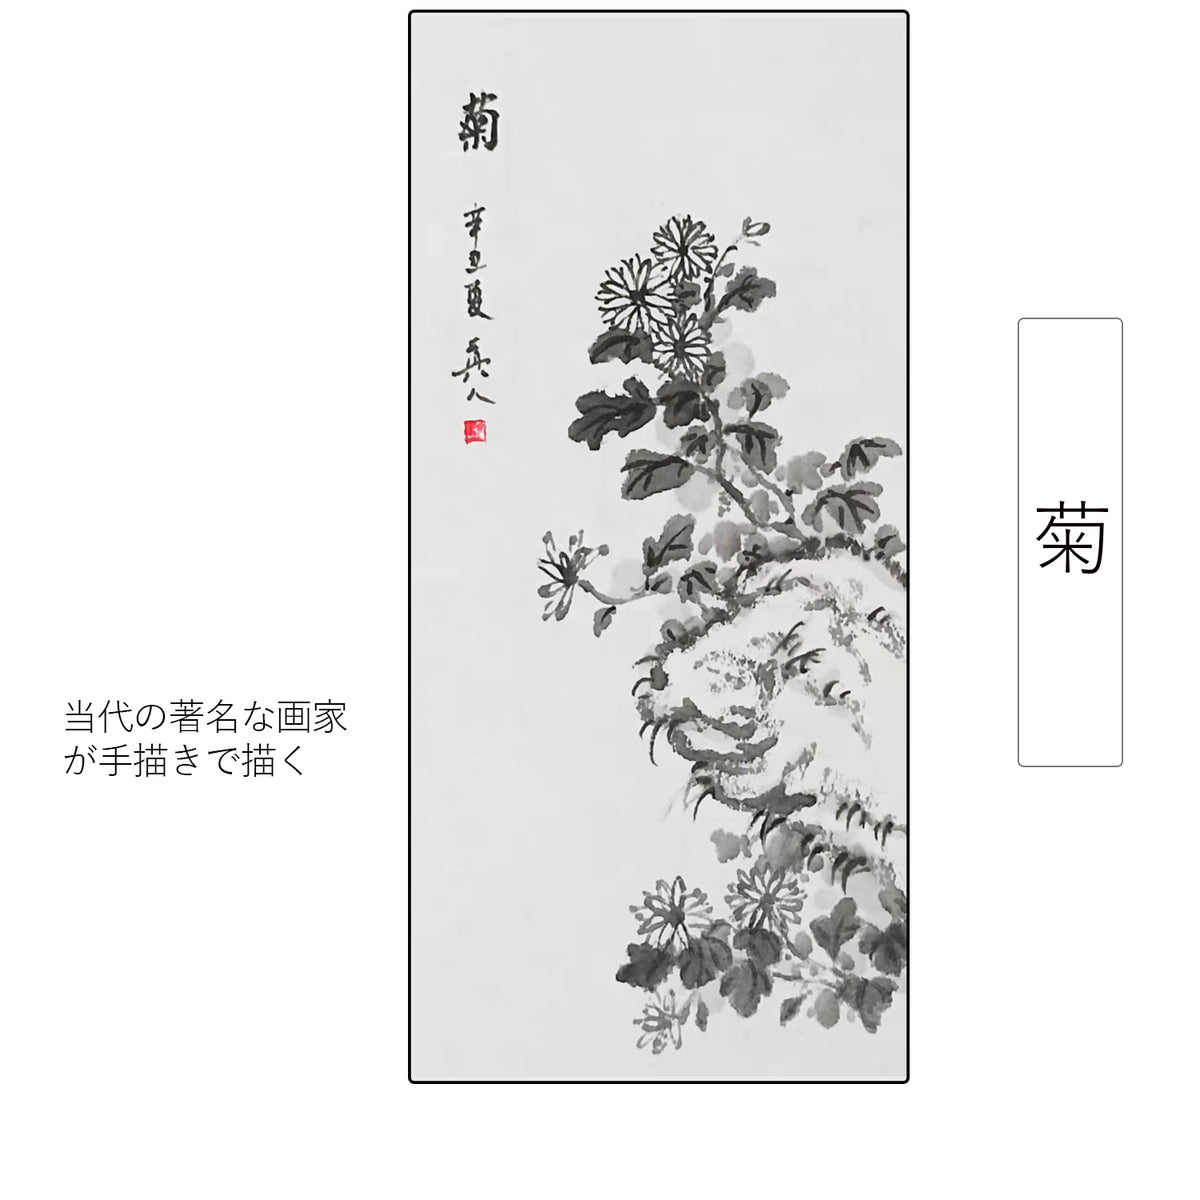 【菊】四君子 四季花鳥水墨画 掛け軸 掛軸 画家の手描き中国書画 